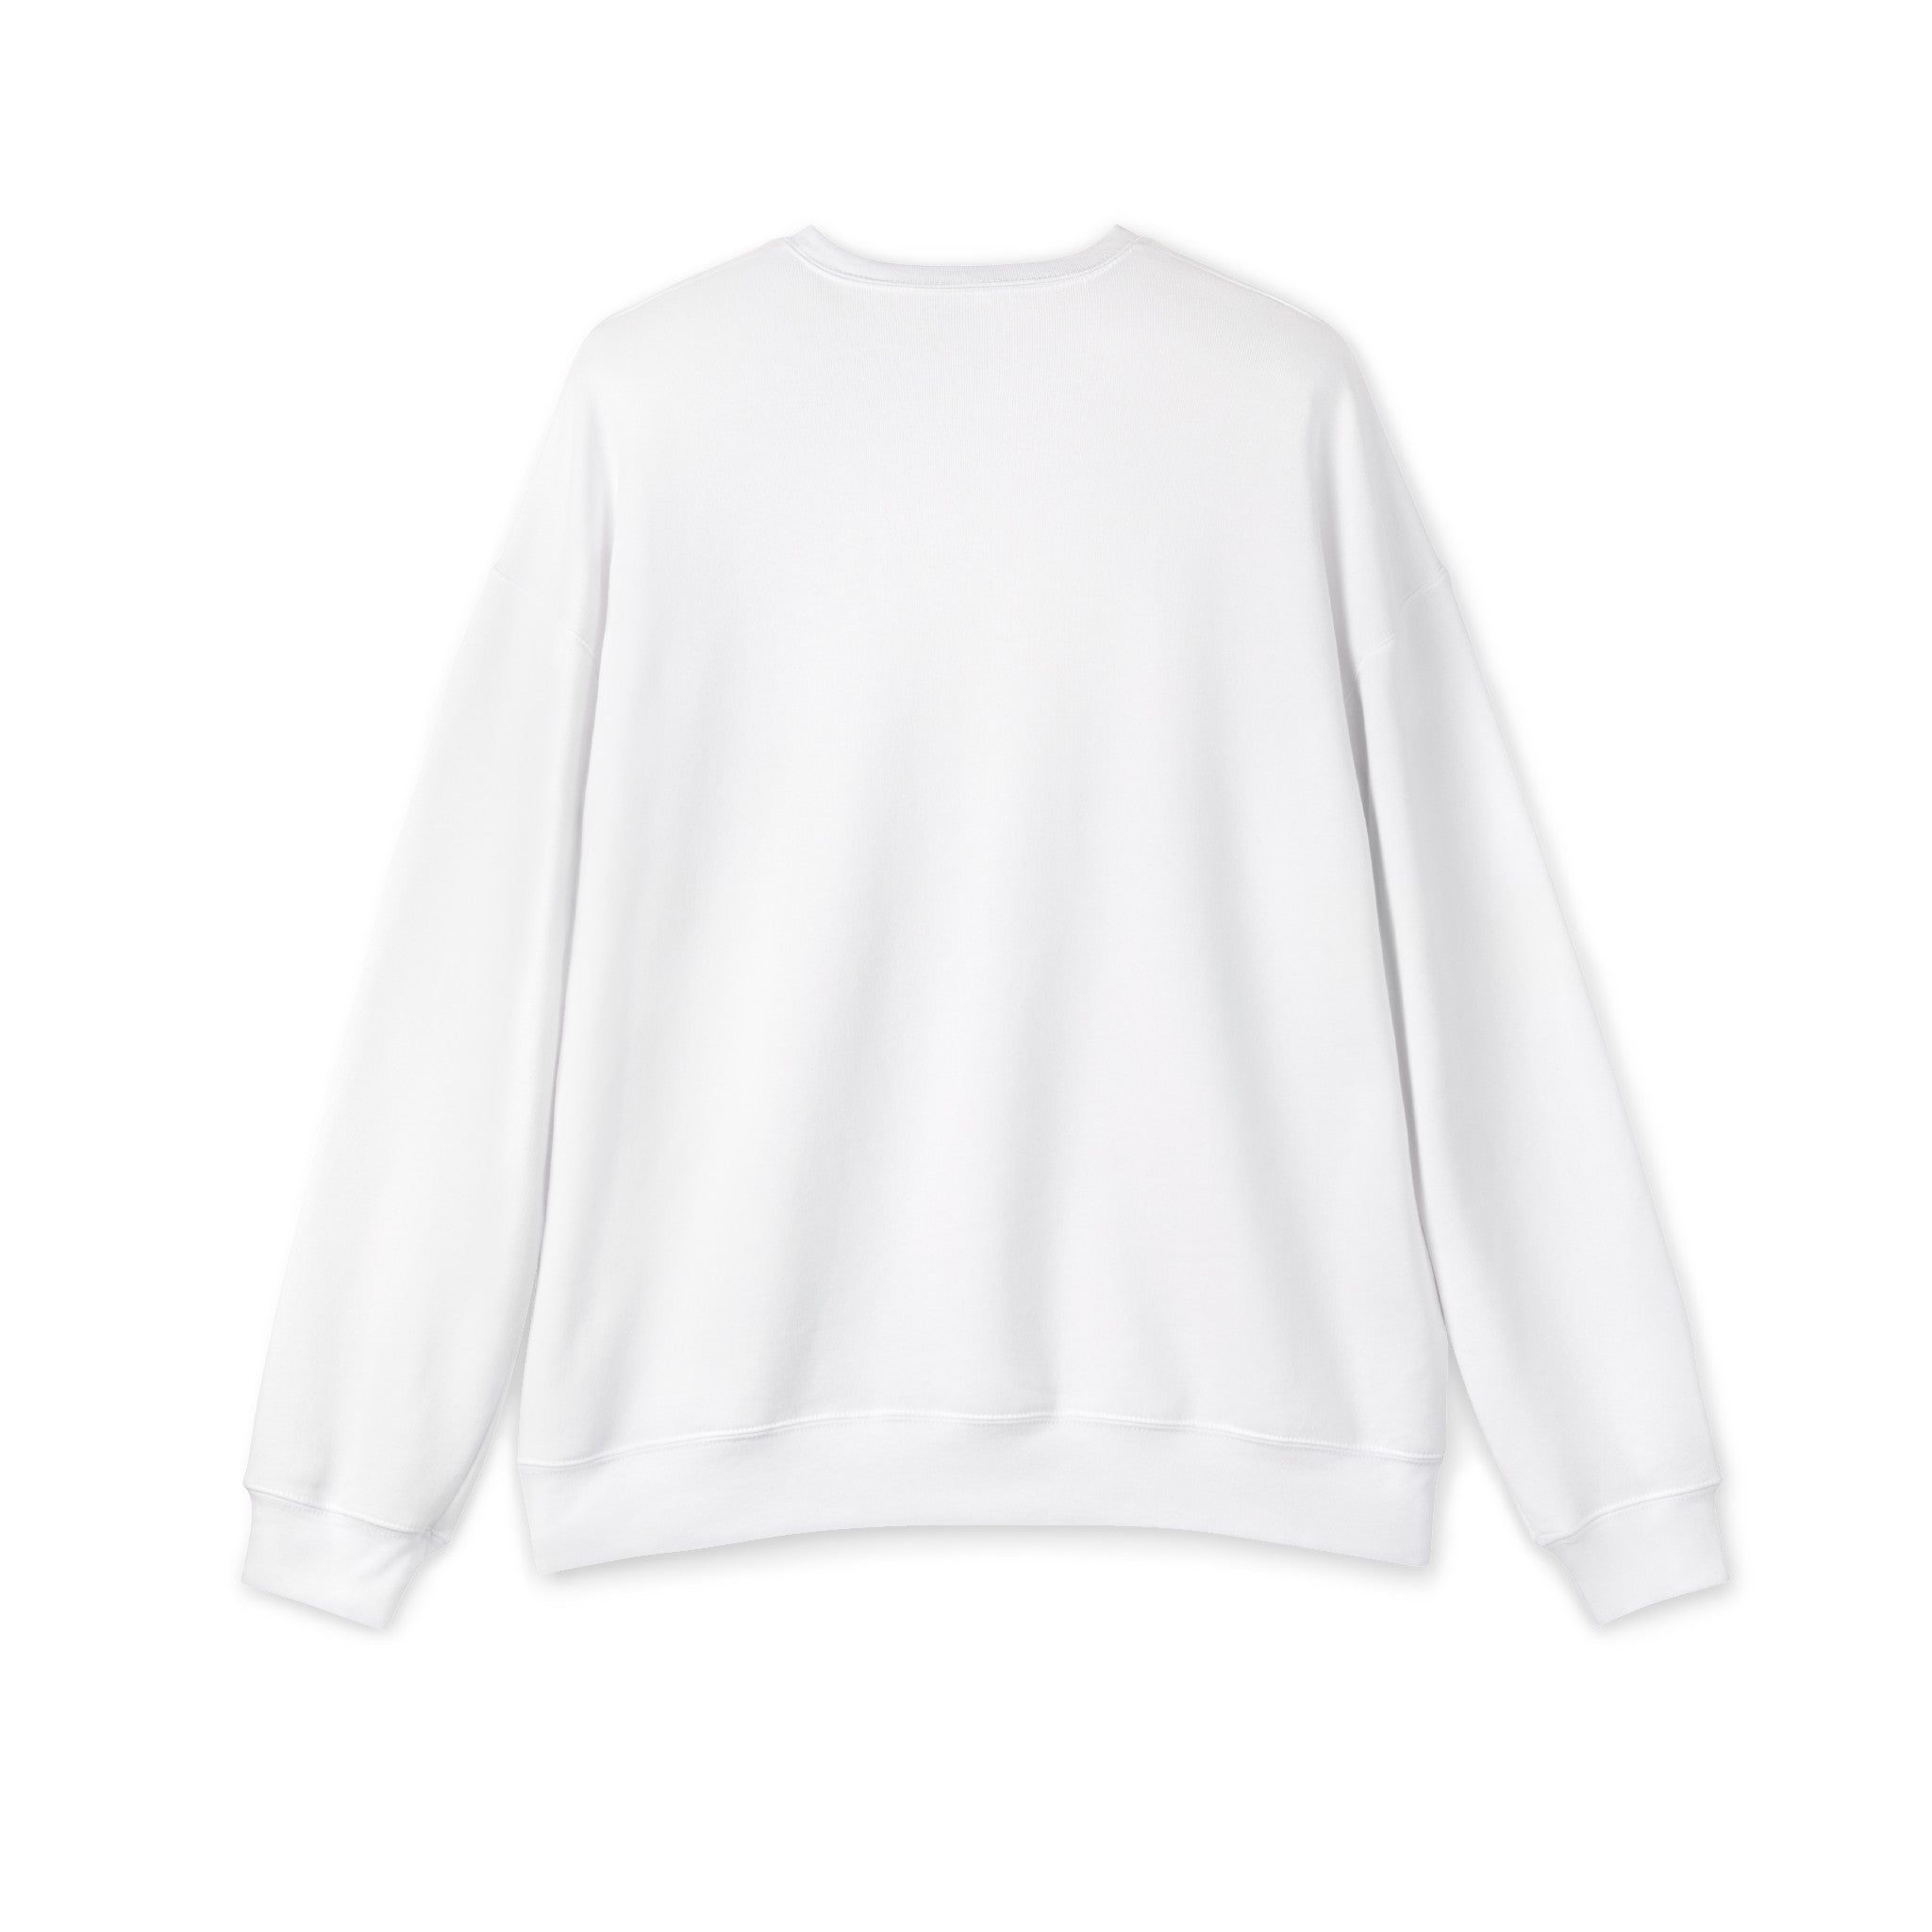 QUEEN MOM - Unisex Drop Shoulder Sweatshirt - Mother’s Day Gift! 🎁